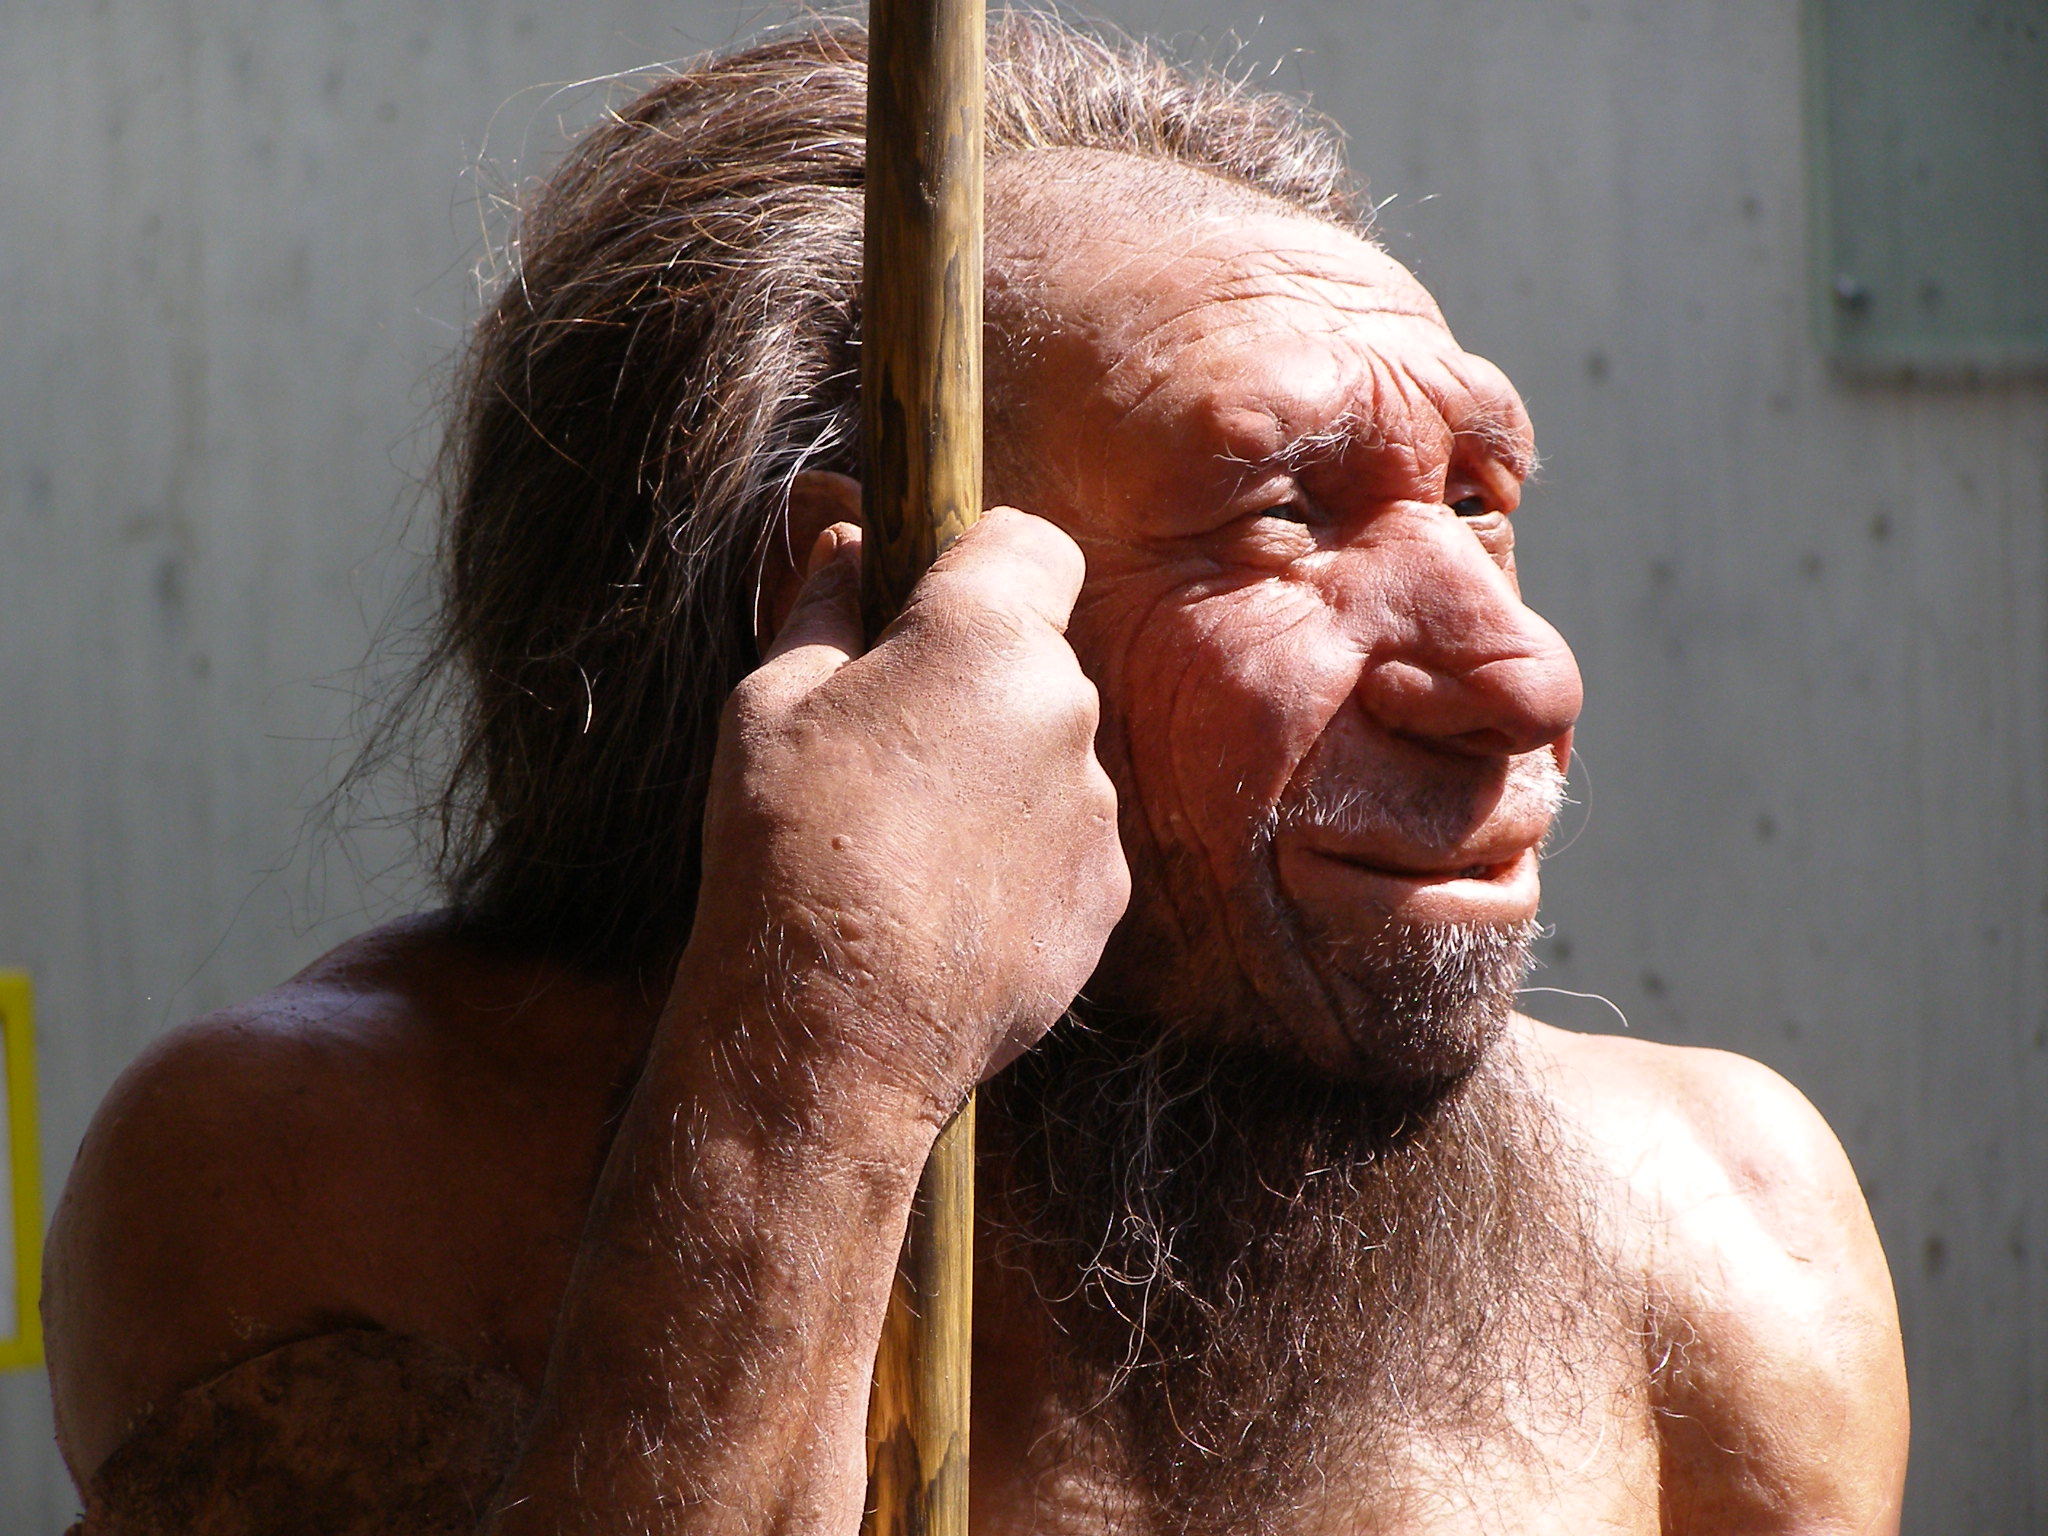 «&nbsp;Les Néandertaliens avaient vécu en Europe et dans l’ouest de l’Asie pendant 200.000 ans avant l’arrivée des humains modernes. Ils étaient probablement bien adaptés au climat, à l’alimentation et aux pathogènes et en s’accouplant avec eux, nous humains modernes avons hérité de ces adaptations avantageuses&nbsp;» explique Janet Kelso qui a signé une des deux études sur ce sujet. © Erich Ferdinand, Flickr, CC BY 2.0